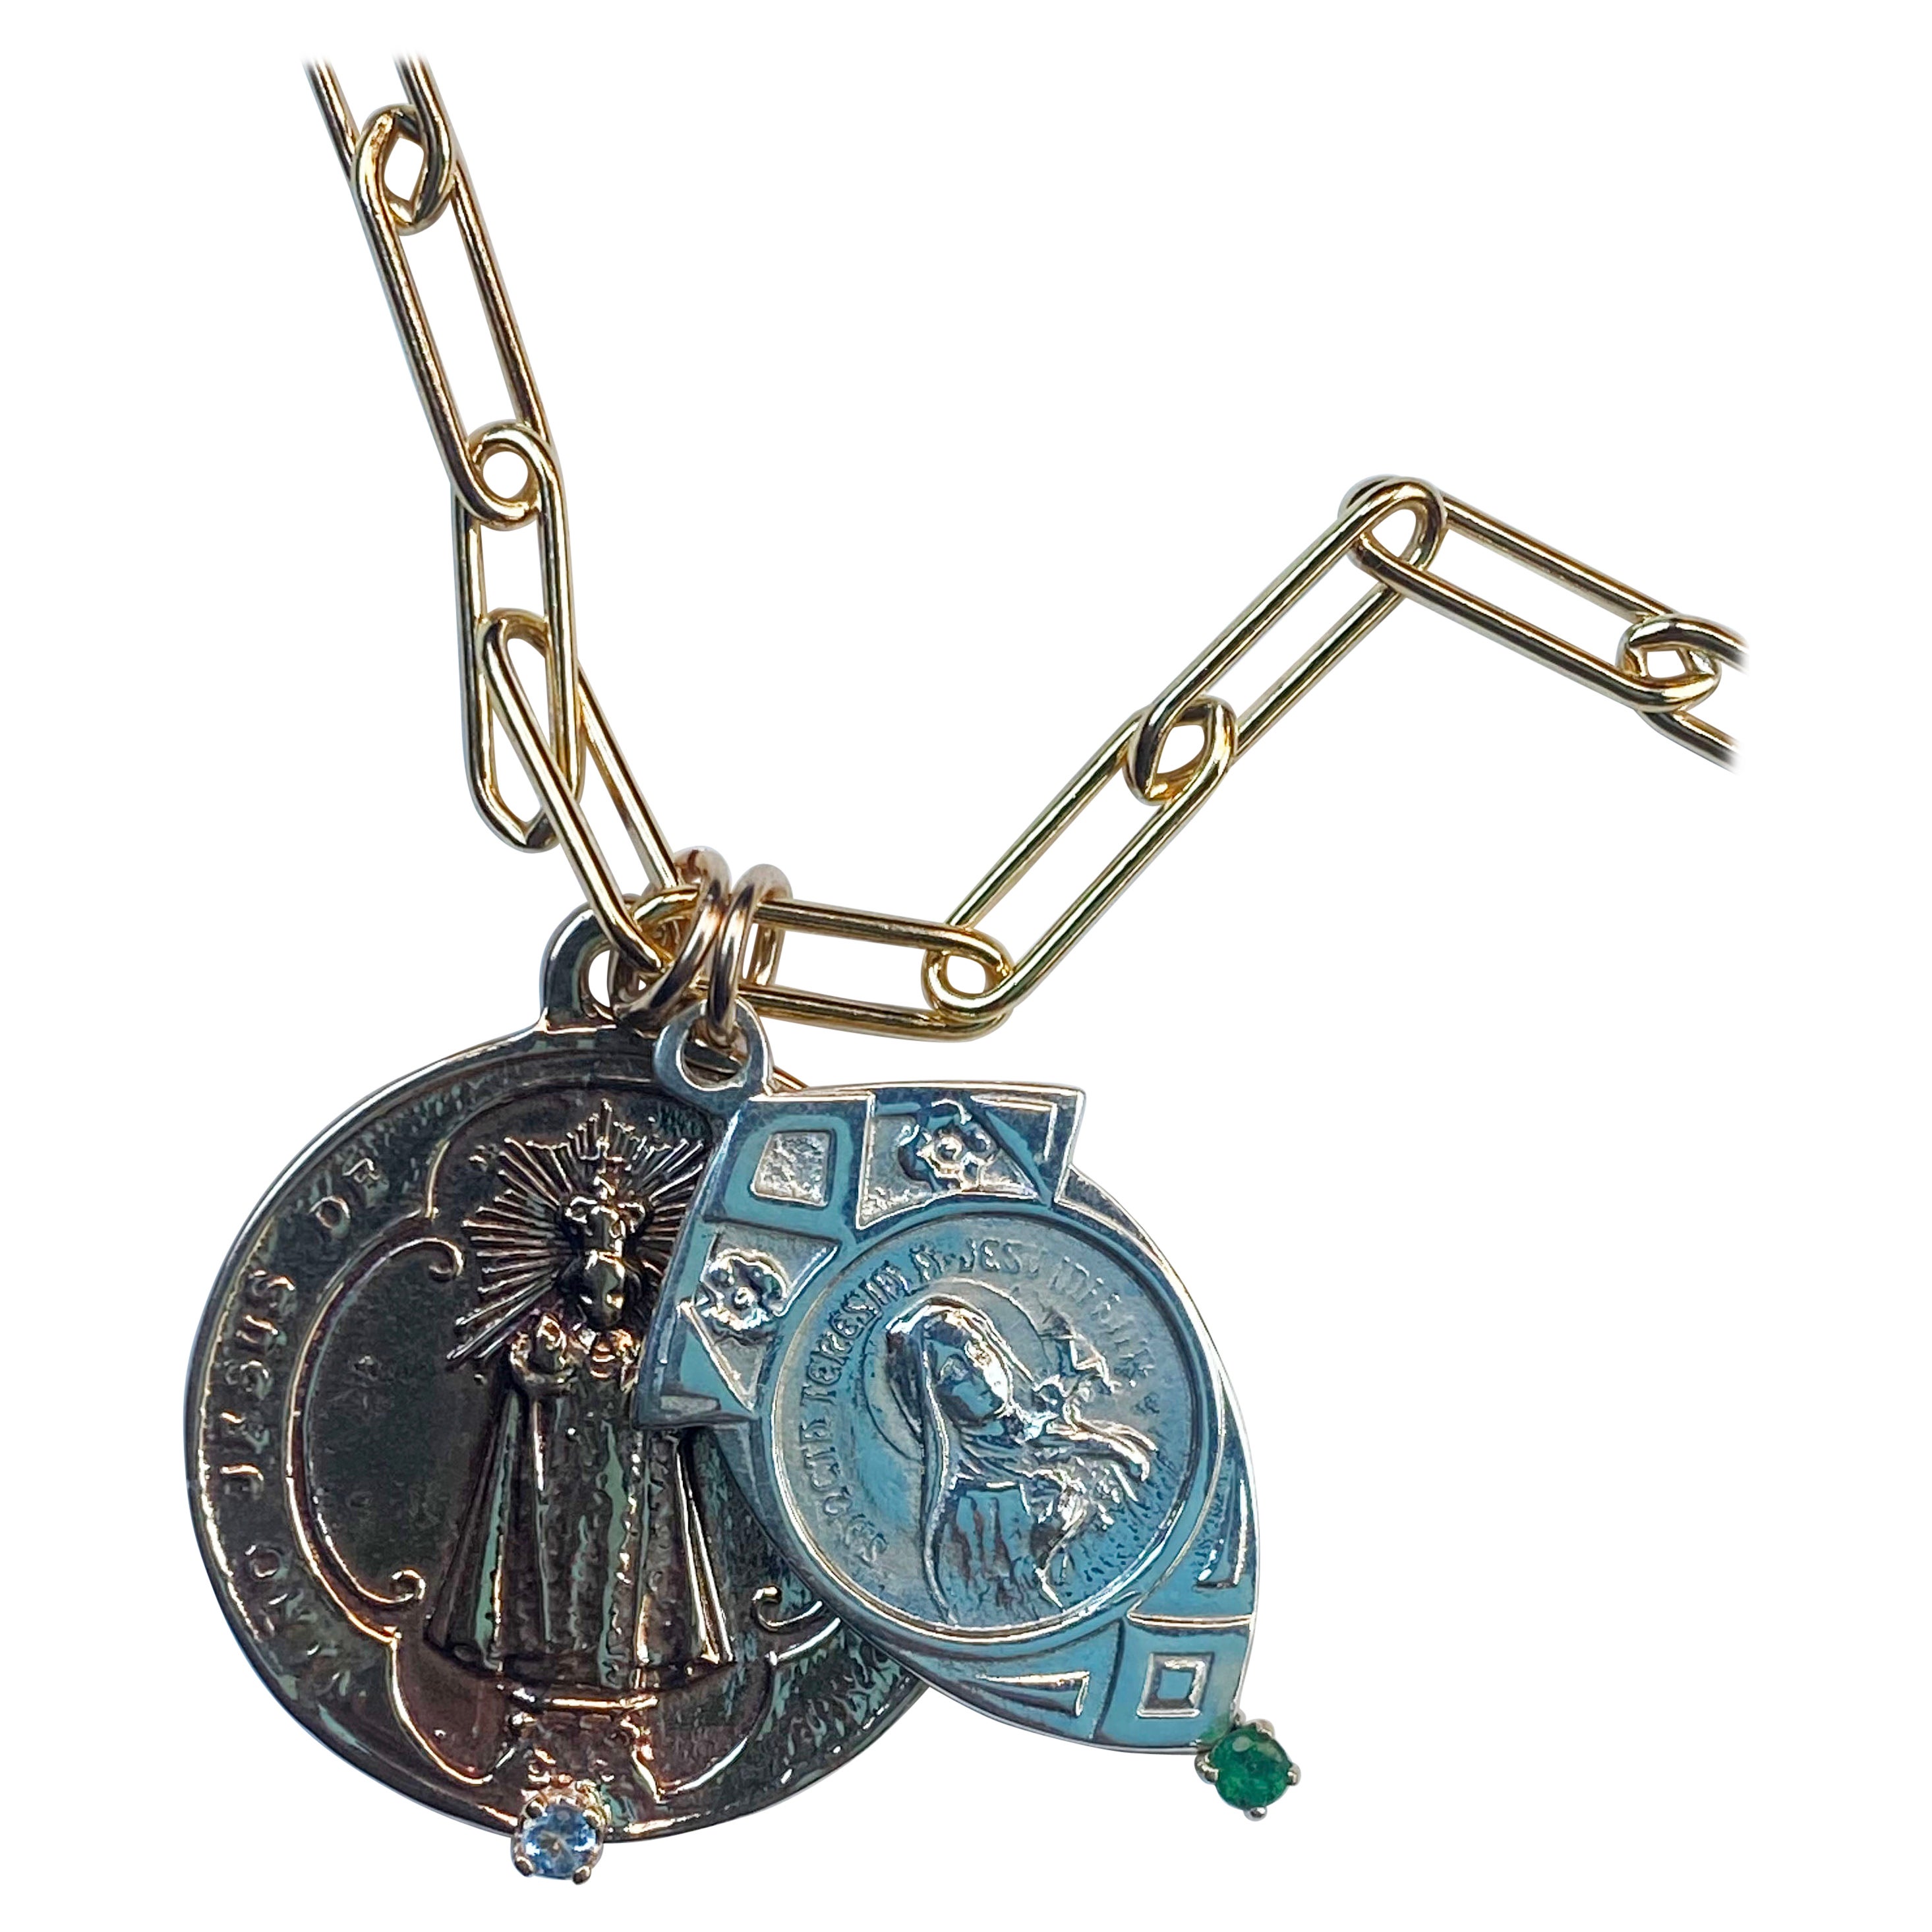 Collier à chaîne avec deux médailles La Ronde en bronze a une aigue-marine et la Médaille en argent a une  Emeraude, la chaîne est en or et réglable en longueur,  24